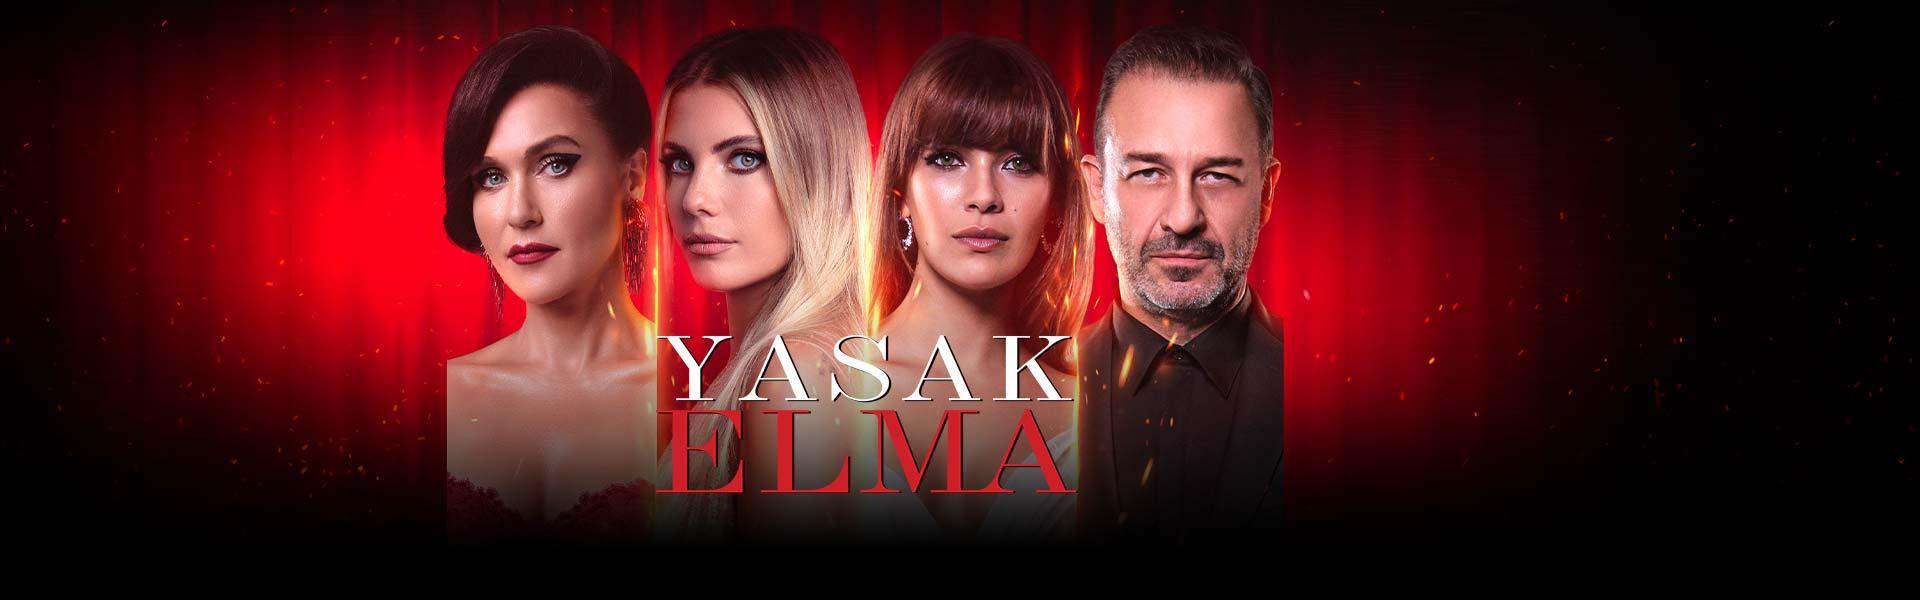 Yasak Elma Season 6 Episode 19 preview